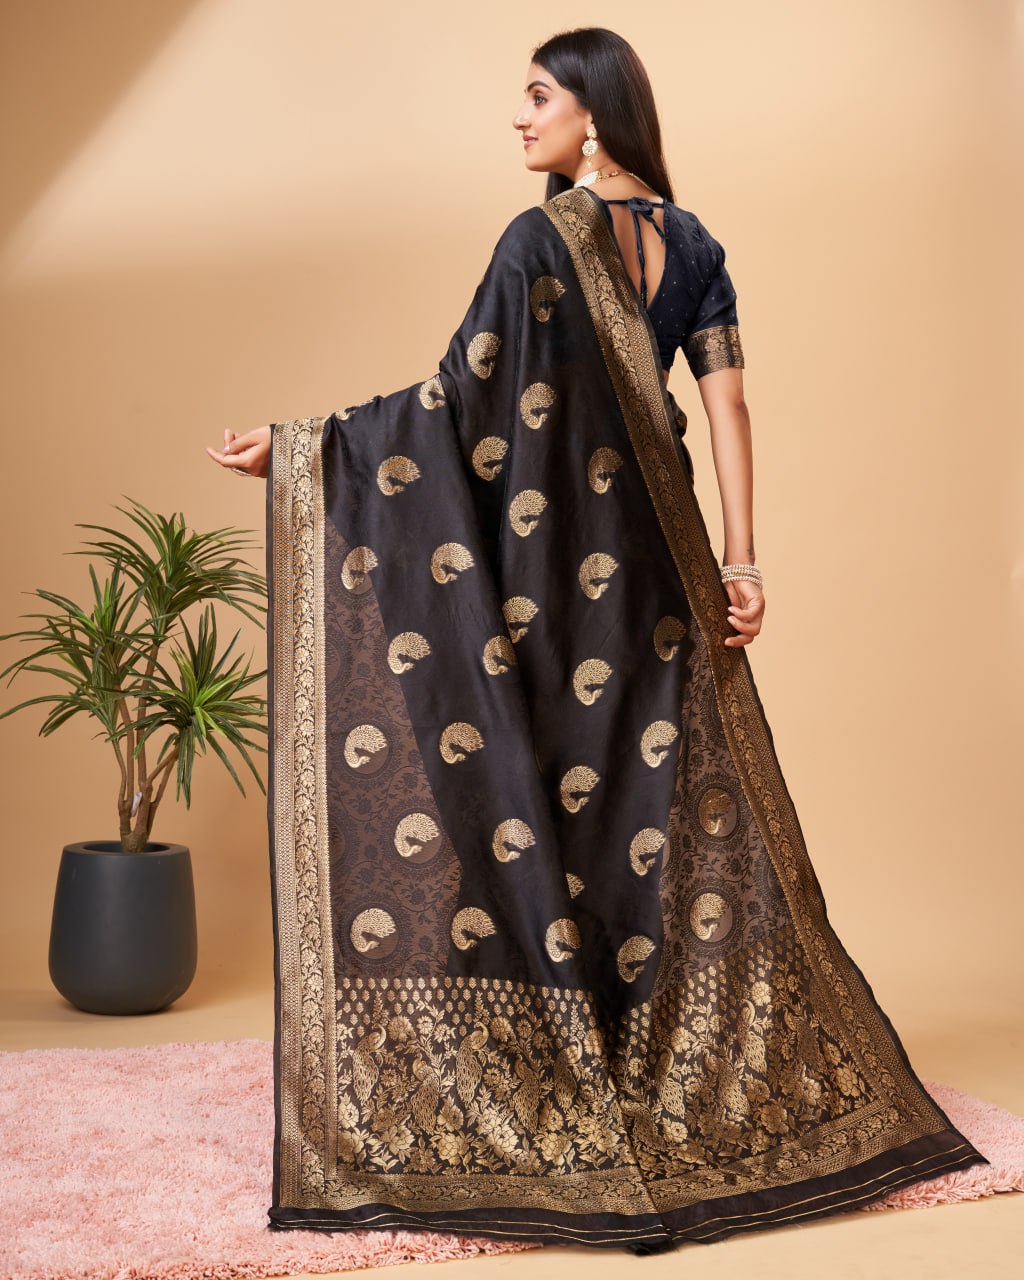 Banarasi Jacquard Elegance: Rich Pallu, Self Weaving, and Matching Blouse Border